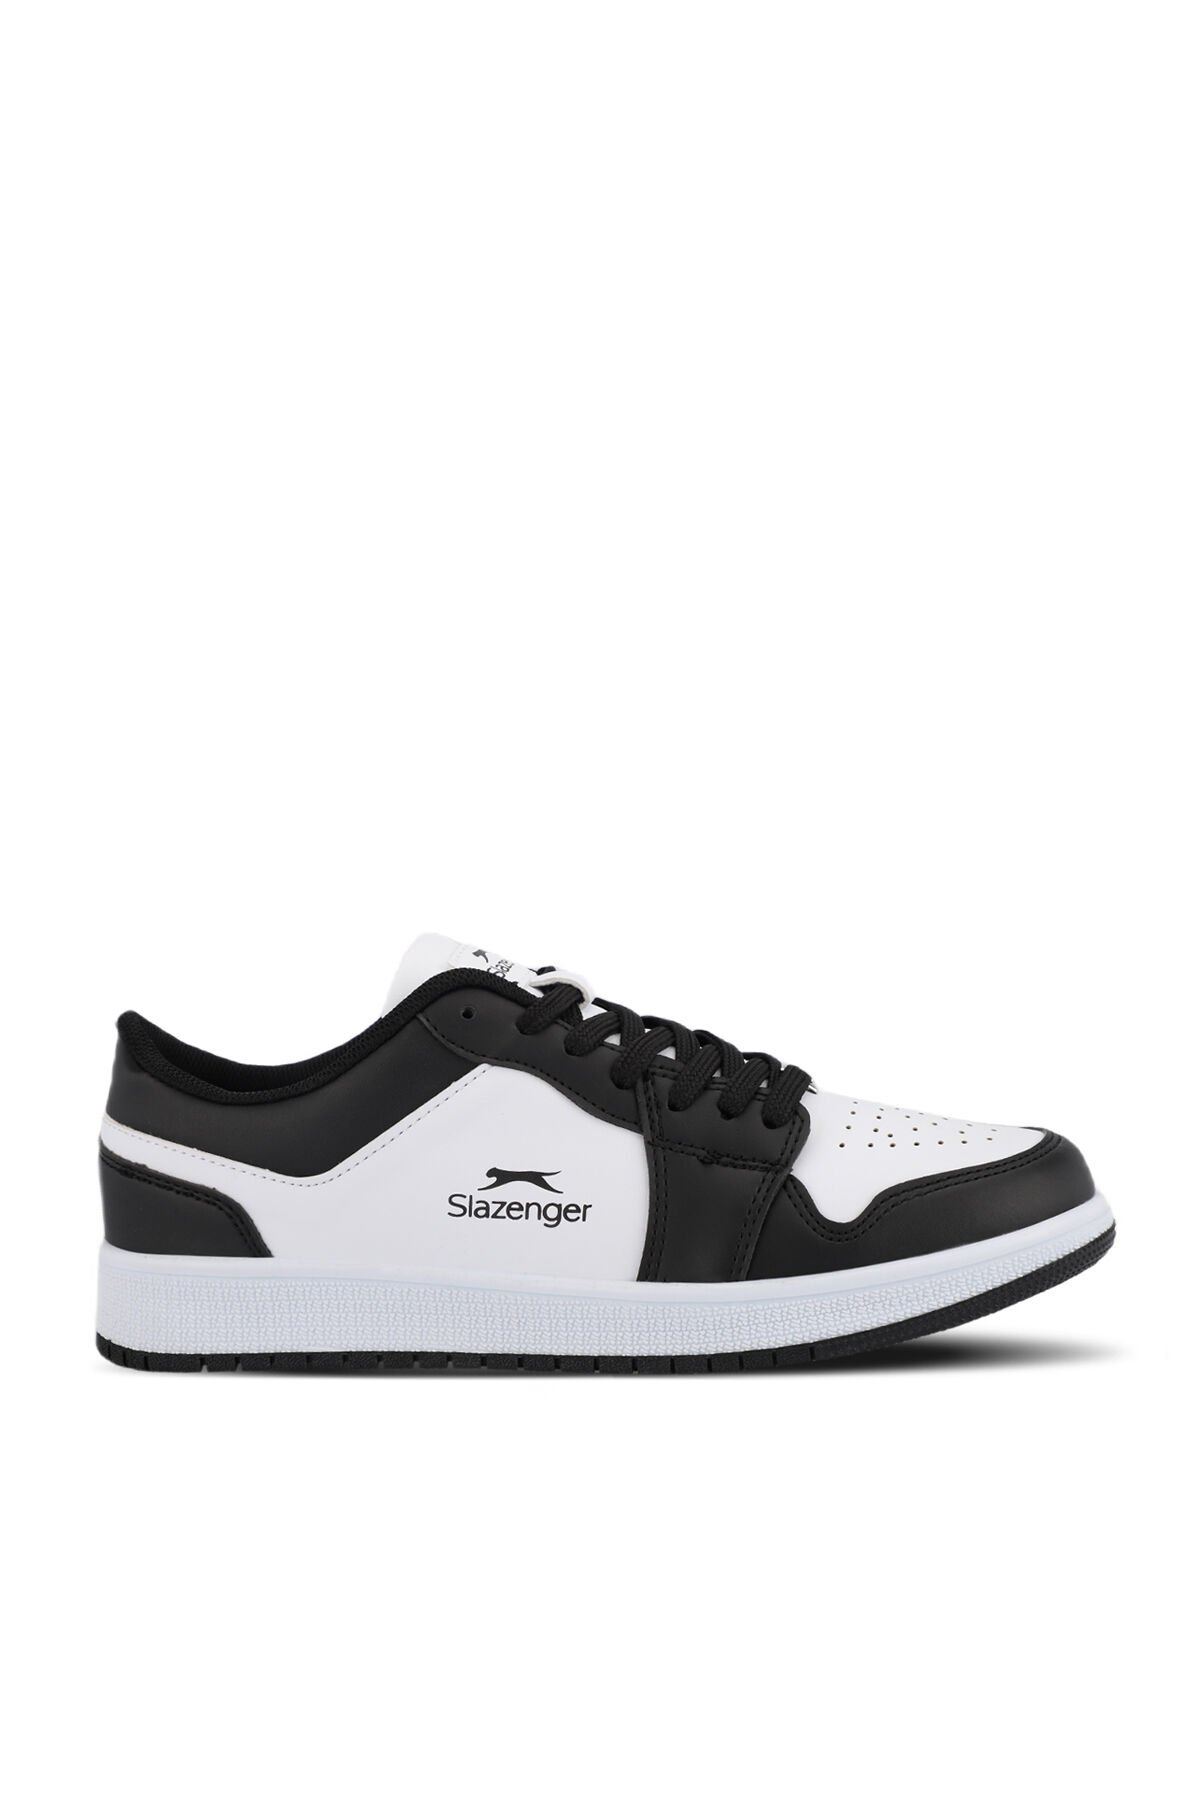 PRINCE I Sneaker Kadın Ayakkabı Beyaz / Siyah - Thumbnail